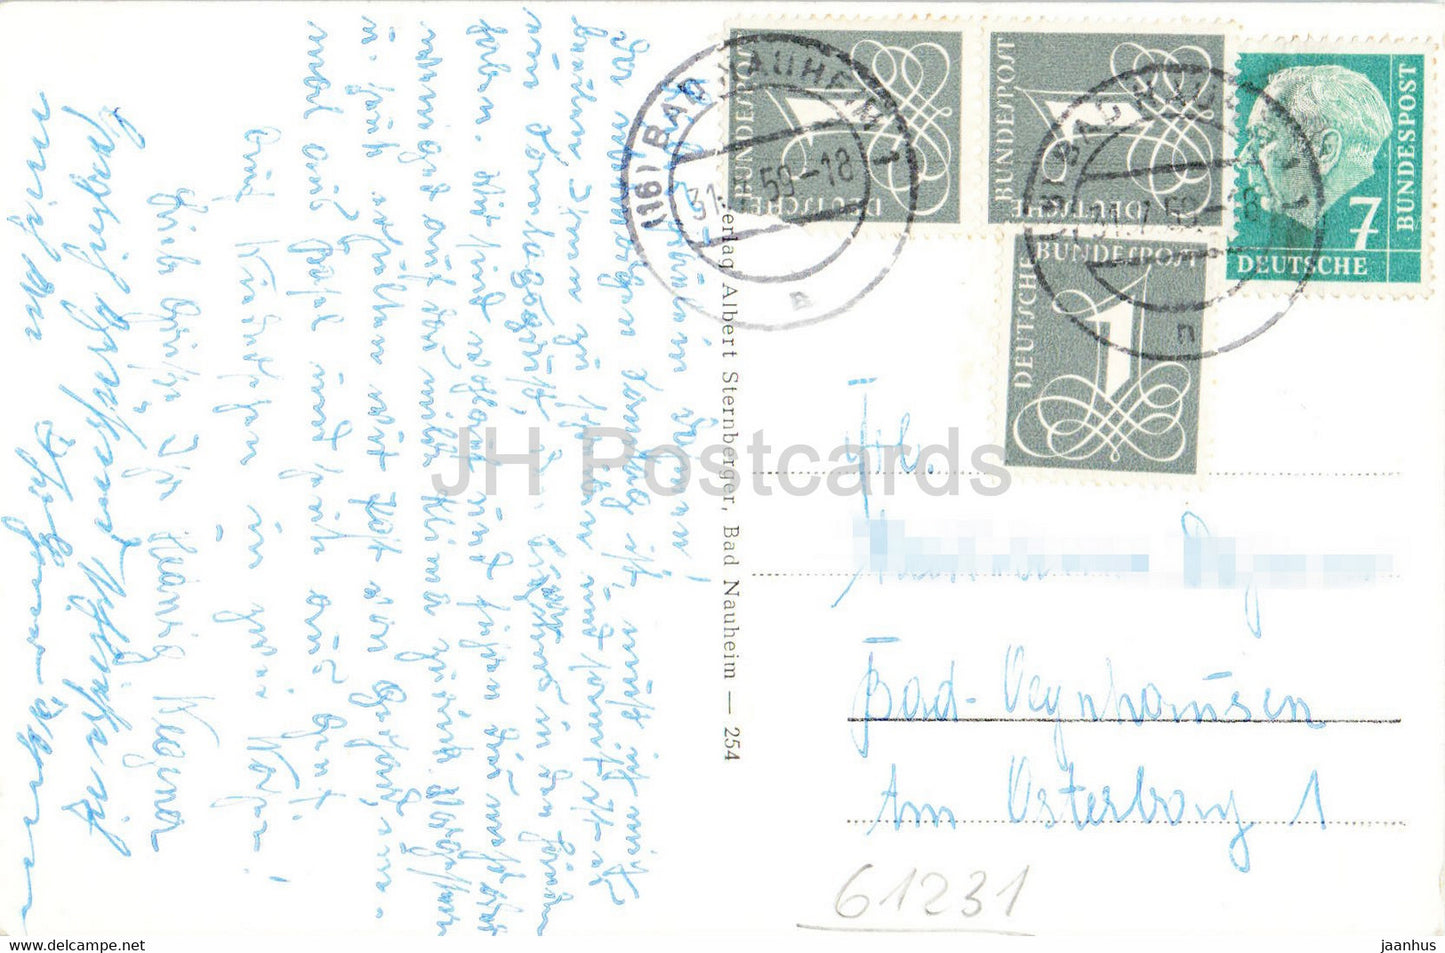 Bad Nauheim - Sprudelhof - alte Postkarte - 1959 - Deutschland - gebraucht